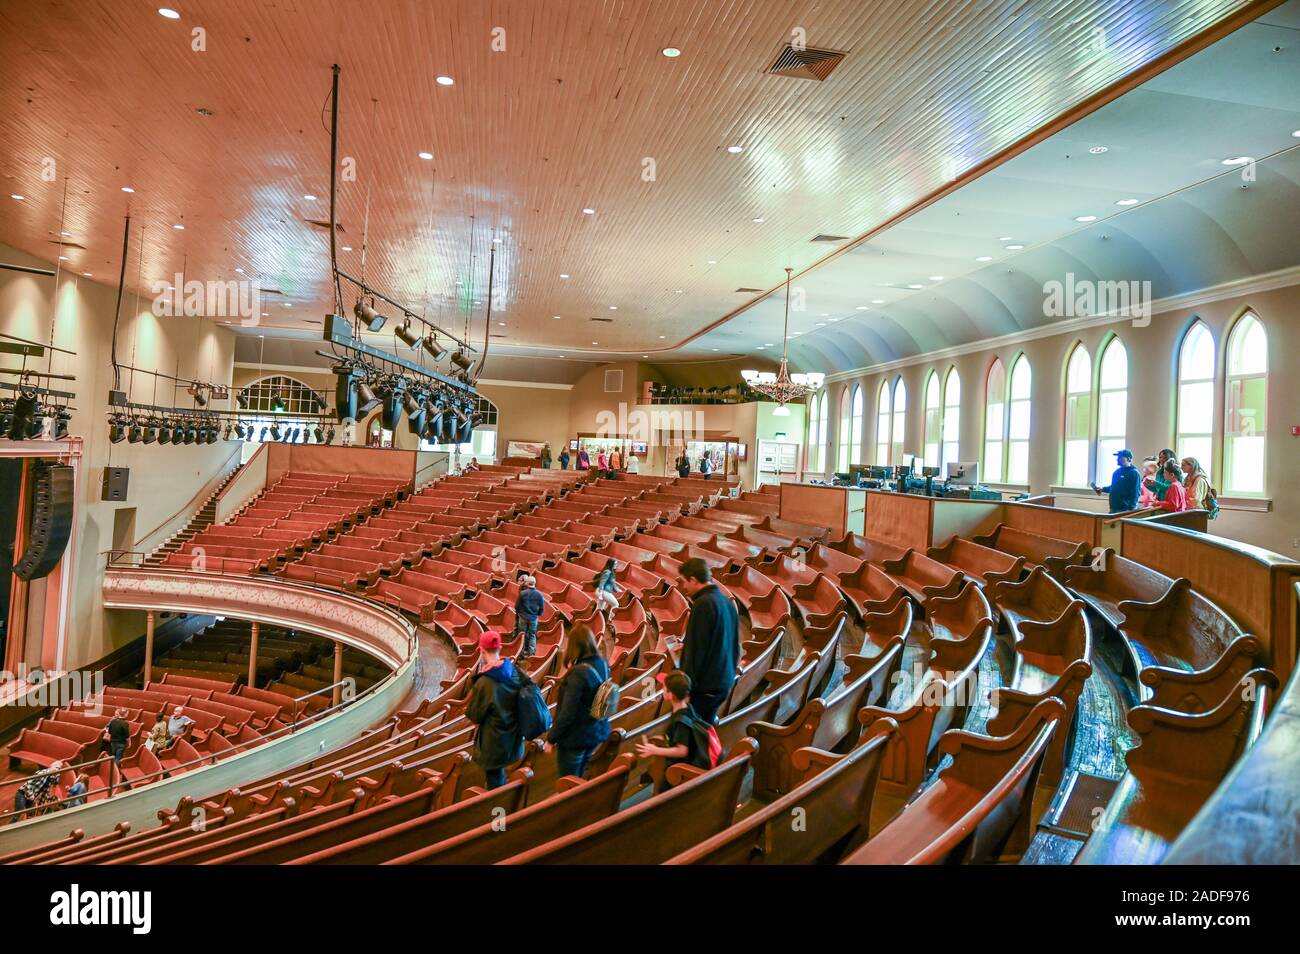 Innenraum der legendären Ryman Auditorium. Die Ryman einmal bewirtete Grand Ole Opry und als Mutter Kirche von Country Musik angesehen. Stockfoto